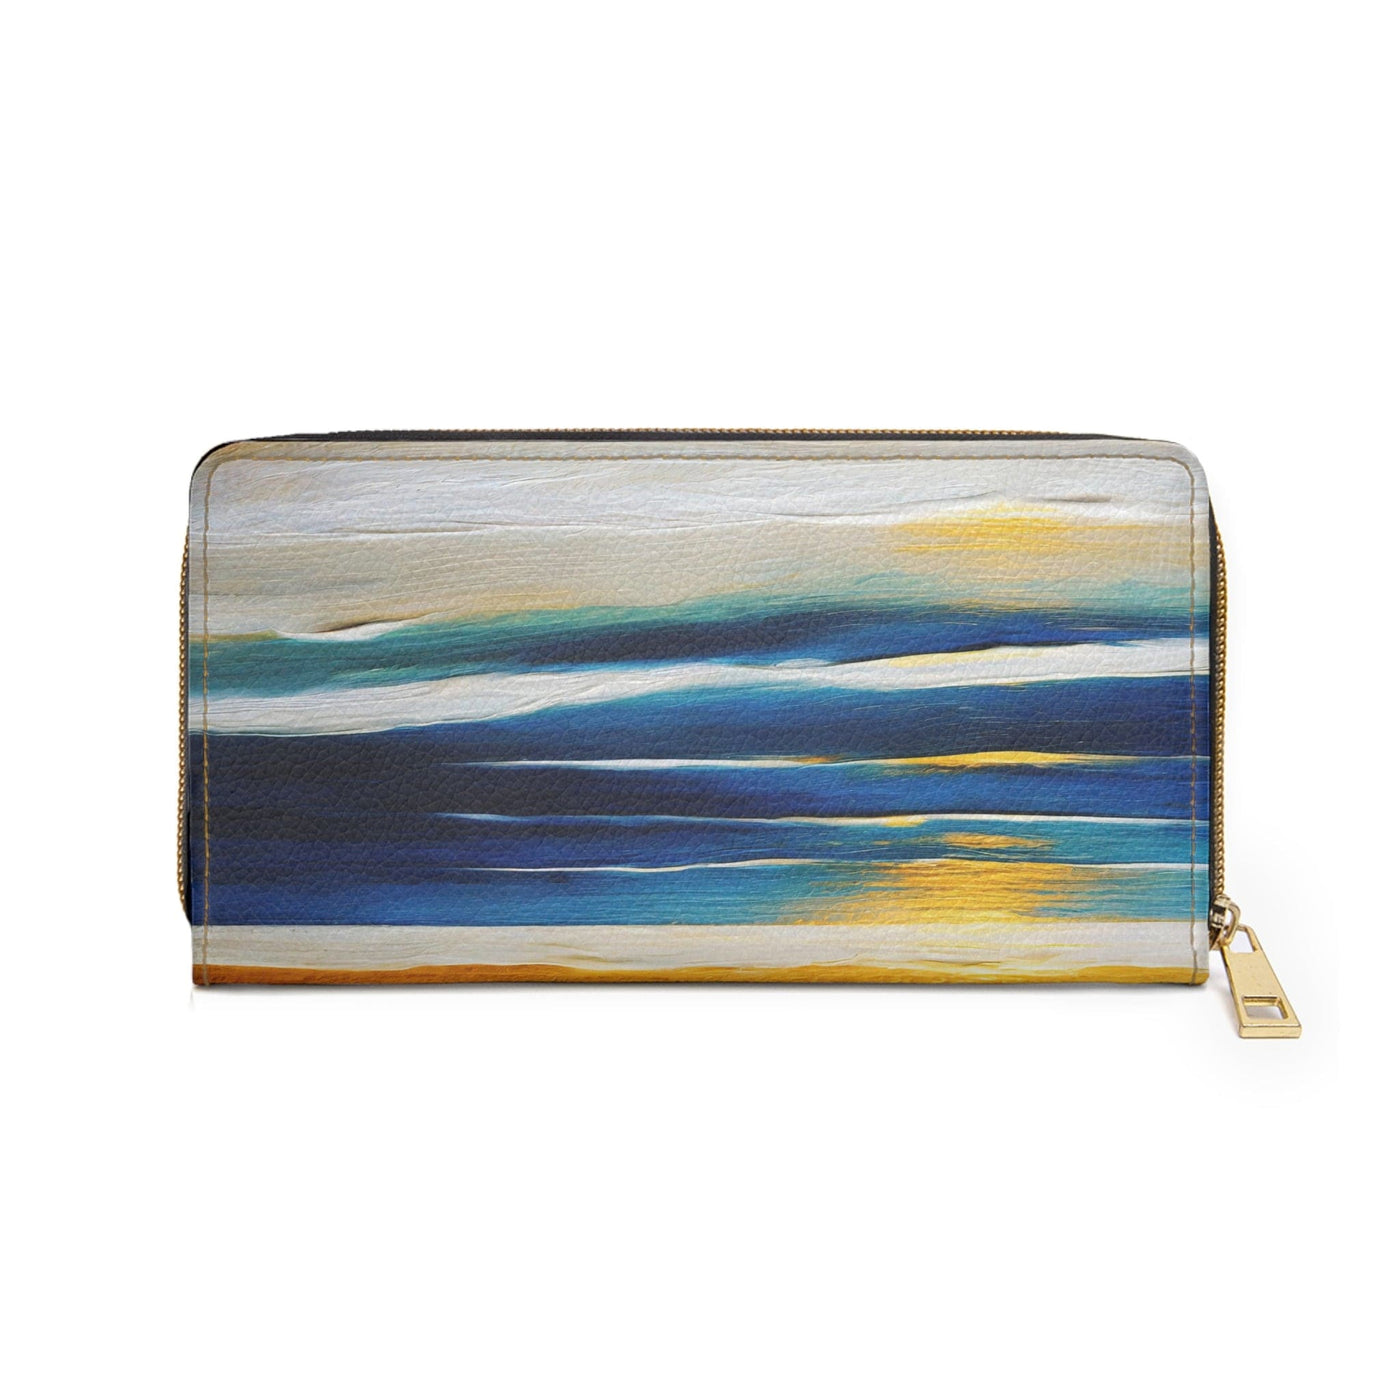 Zipper Wallet Blue Ocean Golden Sunset Print - Accessories